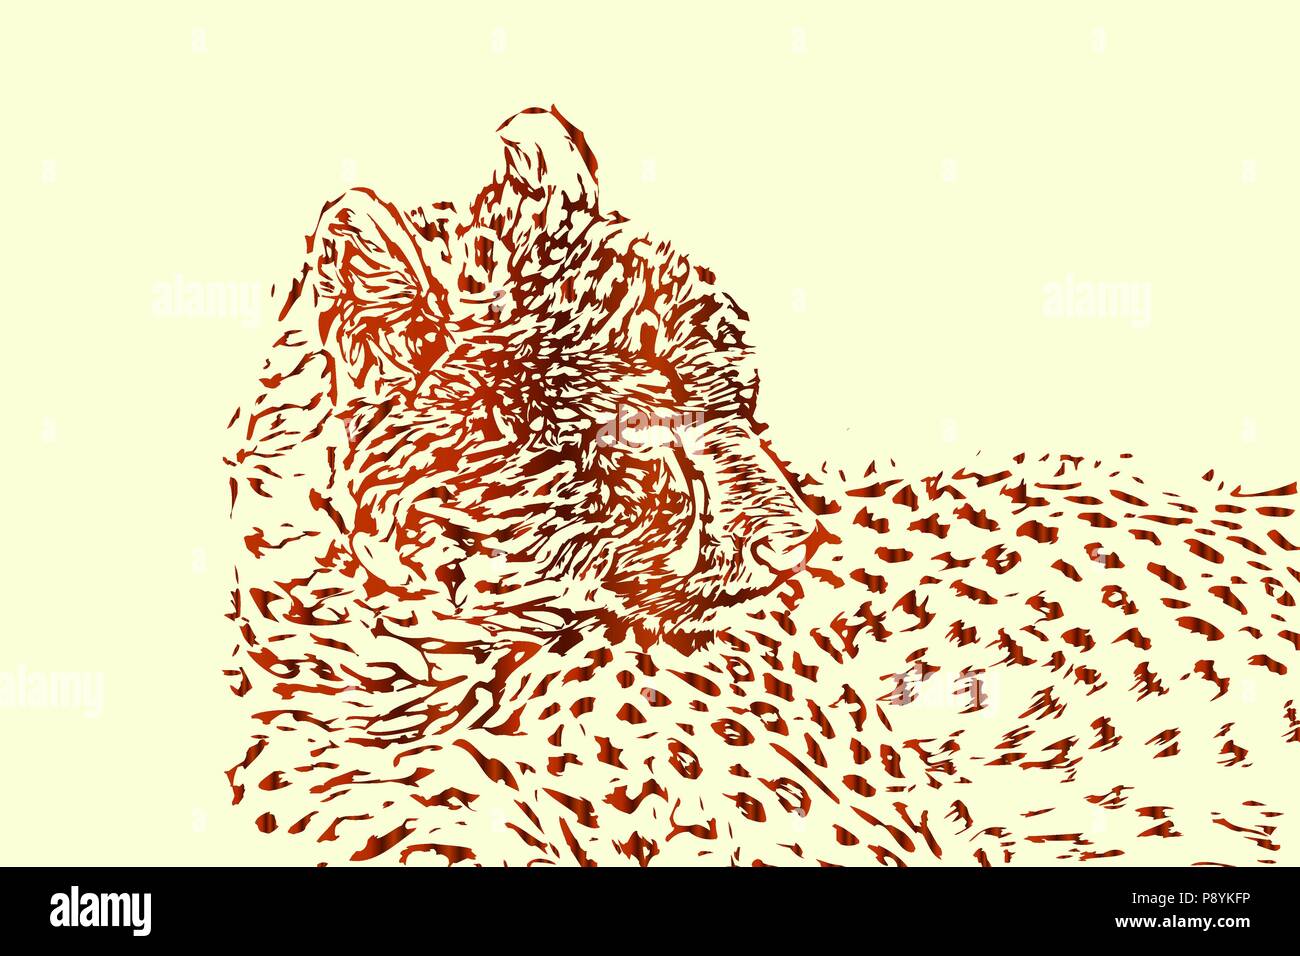 Cheetah, croquis ou plan vectoriel abstract background illustration de la faune. Illustration de Vecteur